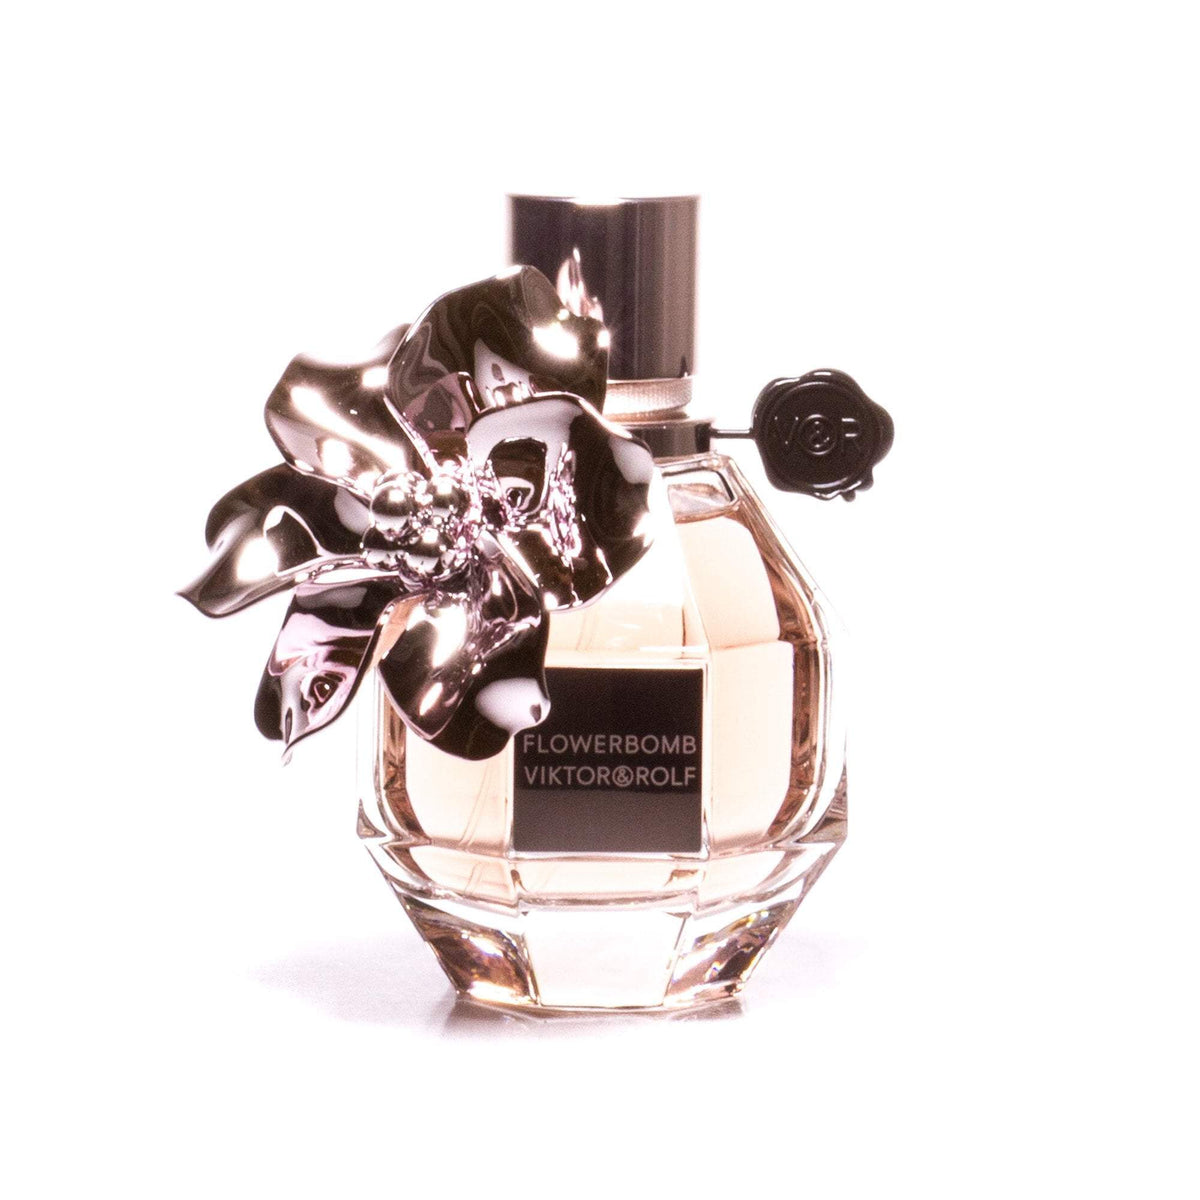 Flowerbomb Limited Edition Eau de Parfum Spray for Women by Viktor & Rolf 1.7 oz.